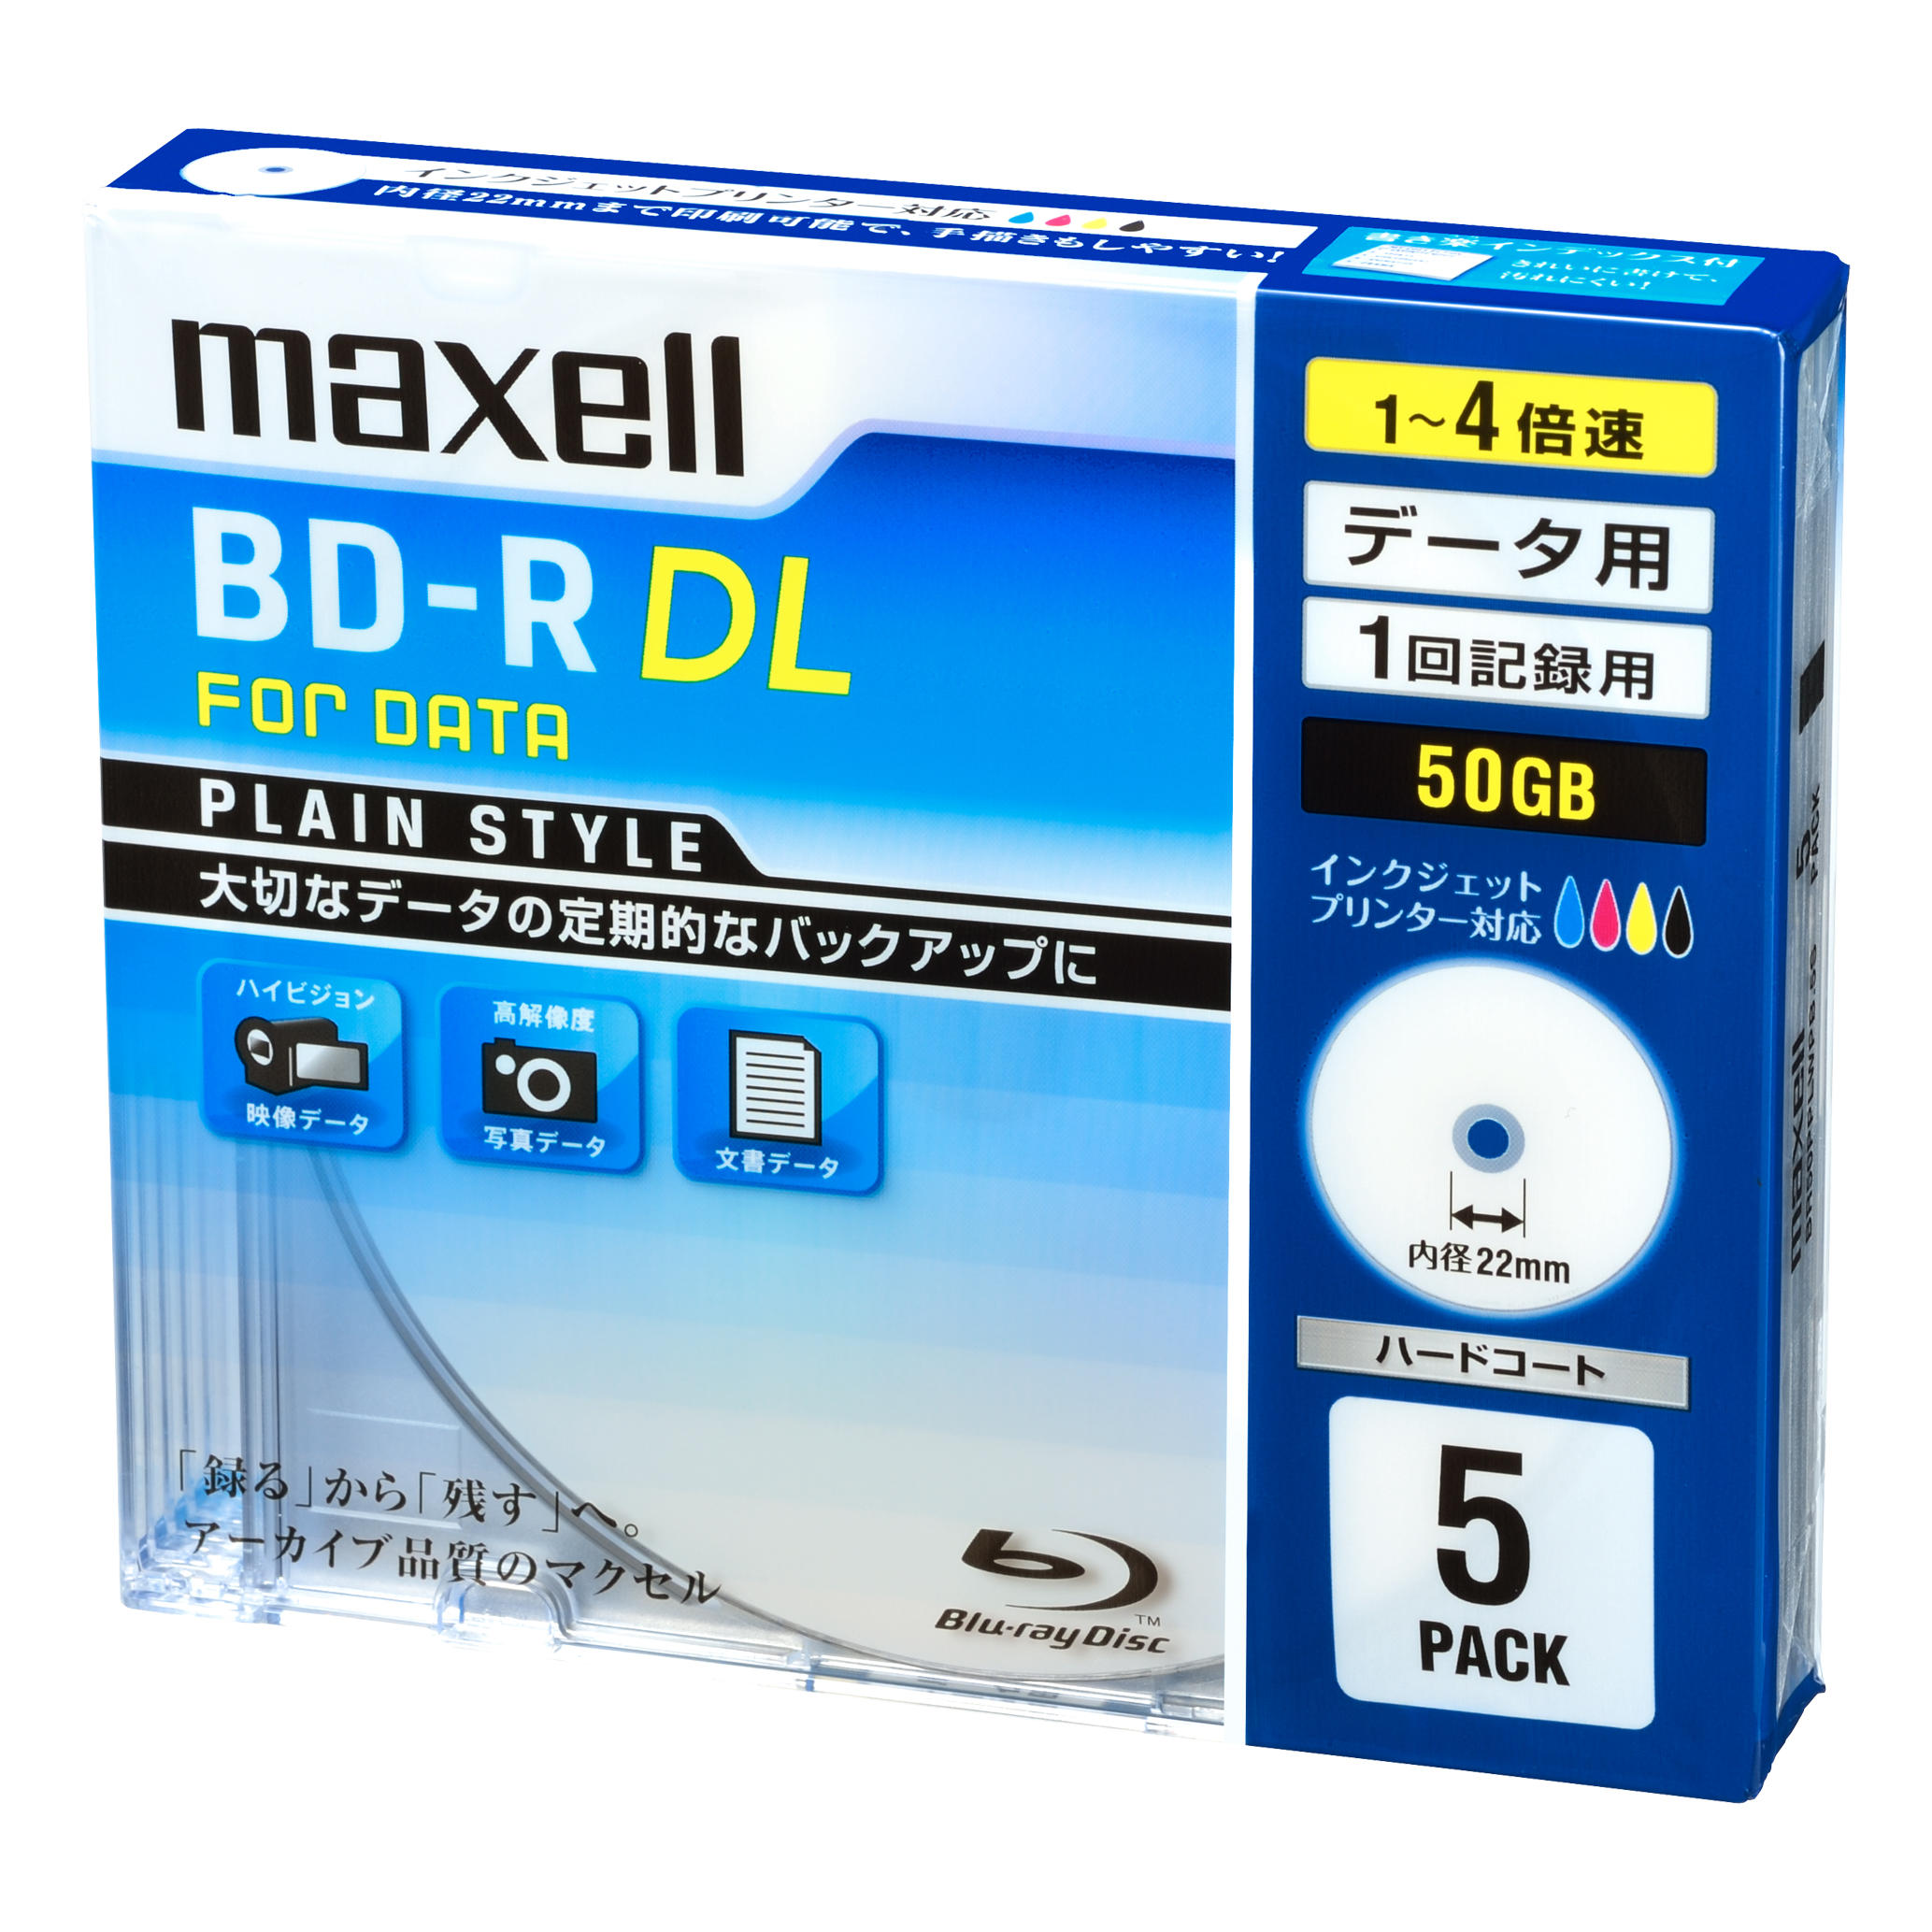 データ用ブルーレイディスク BD-R DL PLAIN STYLE ひろびろ美白 